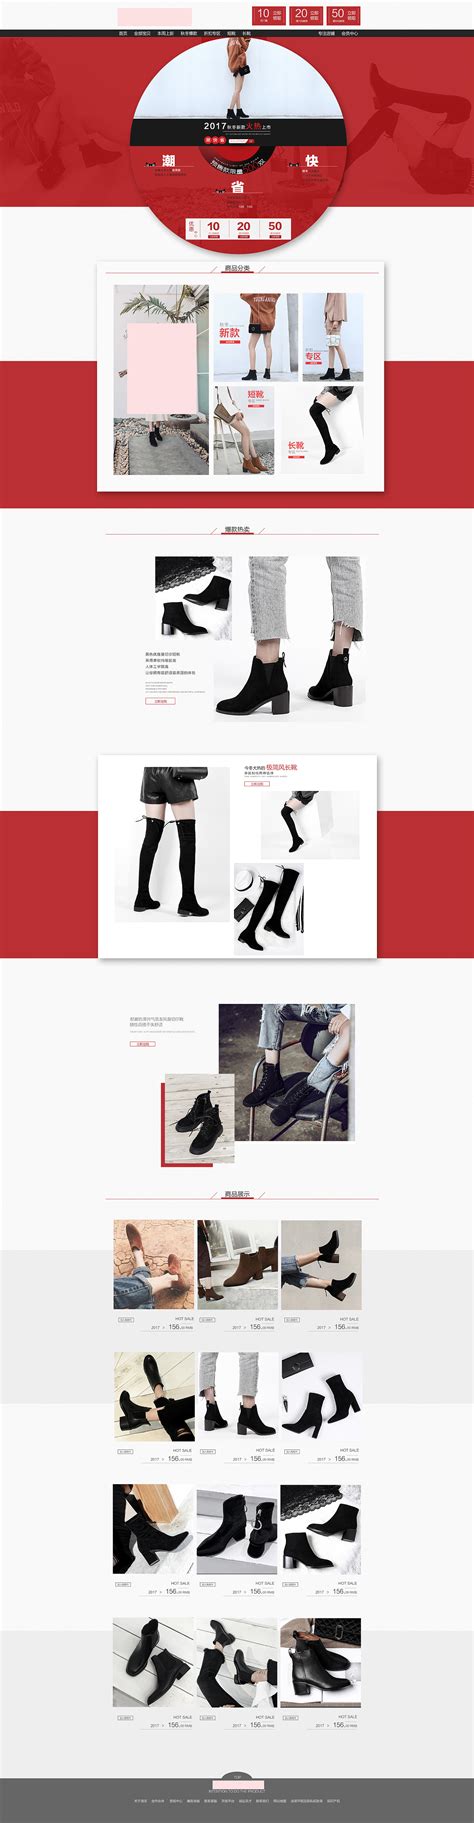 10个鞋类网站设计欣赏 | Reeoo